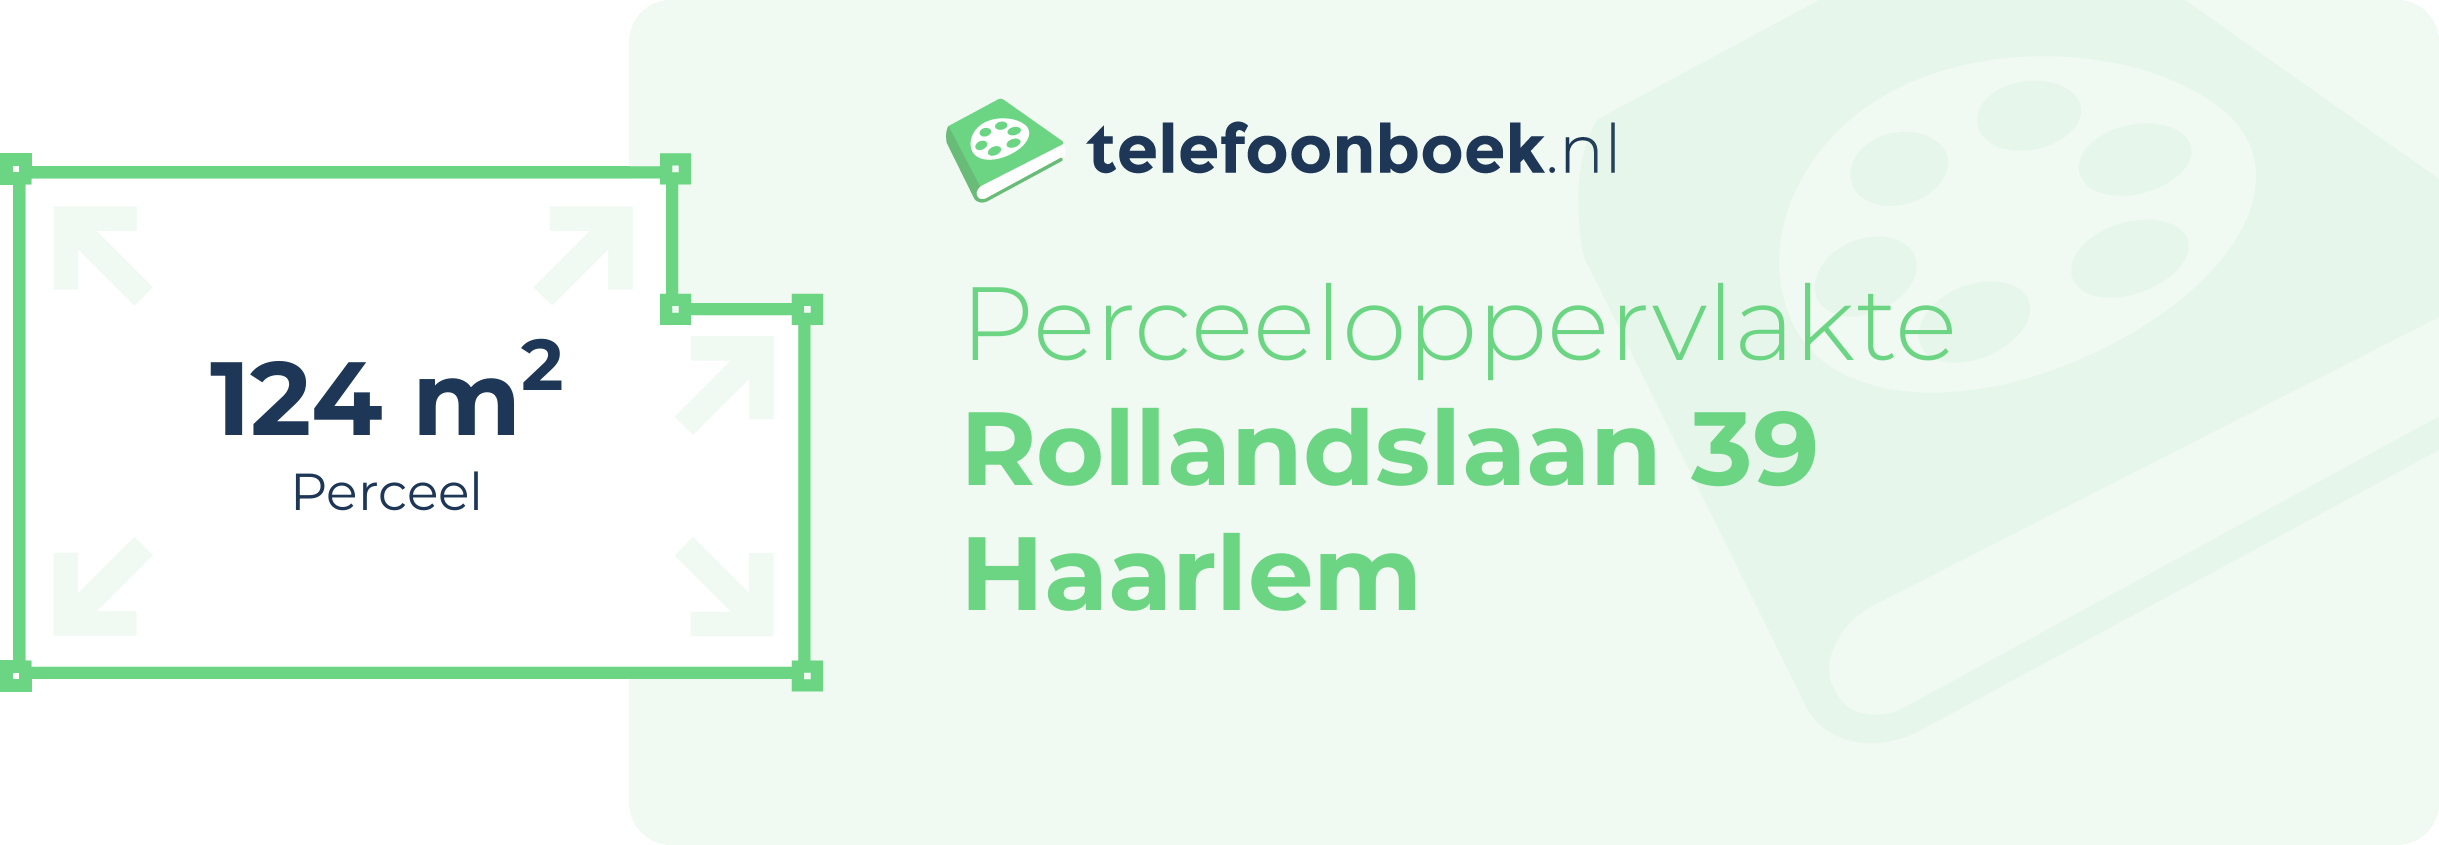 Perceeloppervlakte Rollandslaan 39 Haarlem